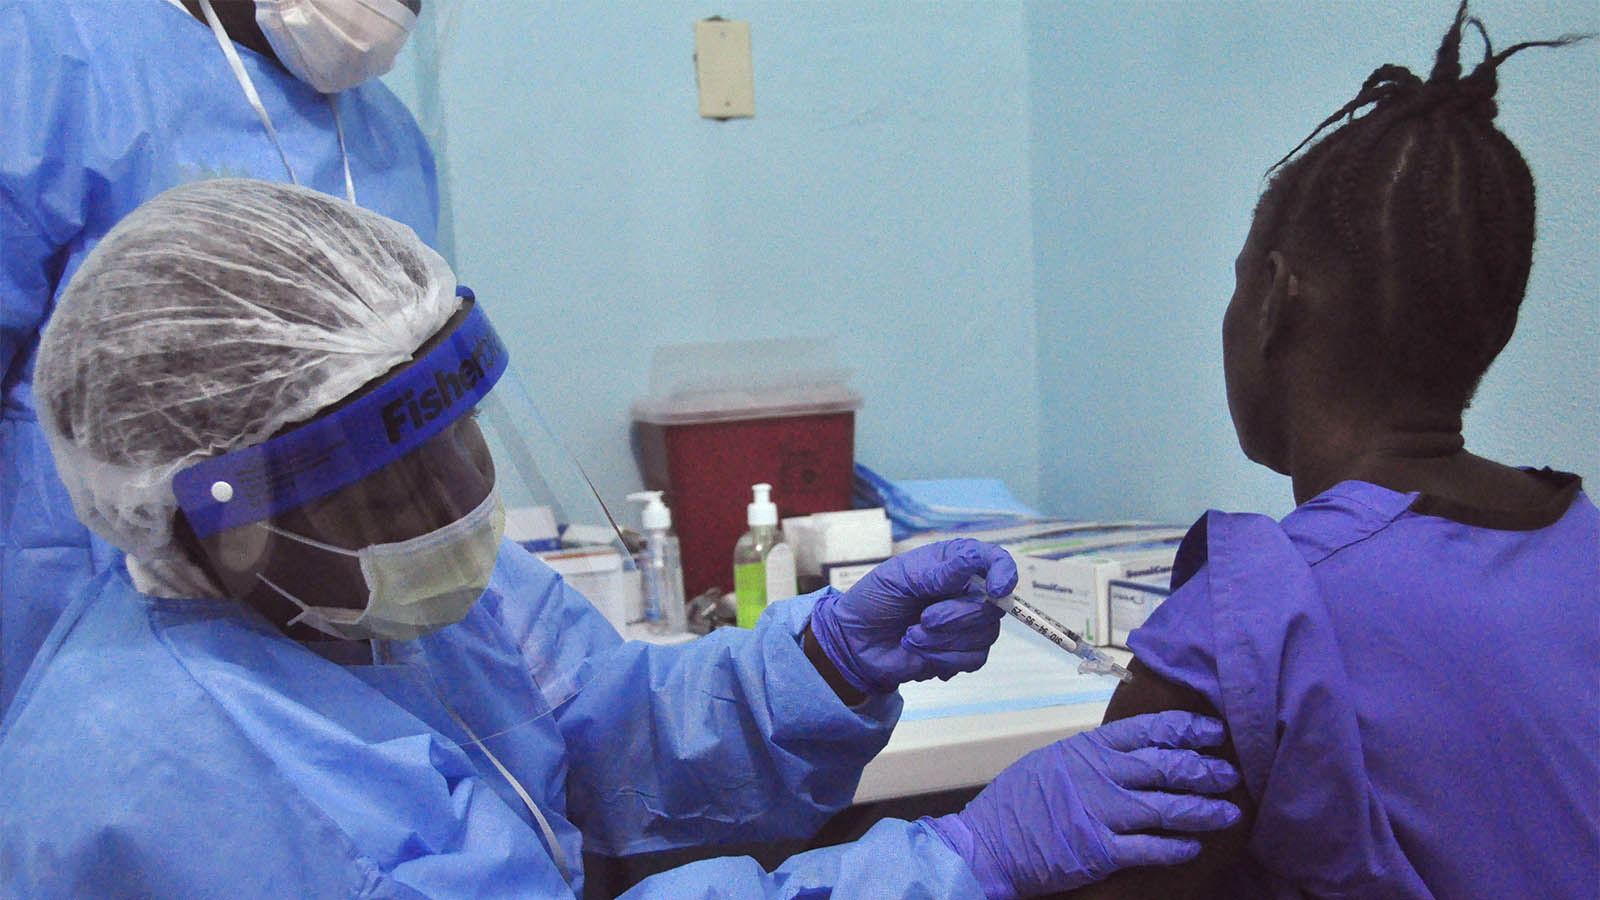 אשה מקבלת זריקה במסגרת ניסויים בחיסון לנגיף האבולה שקטל קרוב ל-9,000 בני-אדם במערב אפריקה. מונרוביה, ליבריה. ה-2 בפברואר 2015(AP Photo/ Abbas Dulleh)